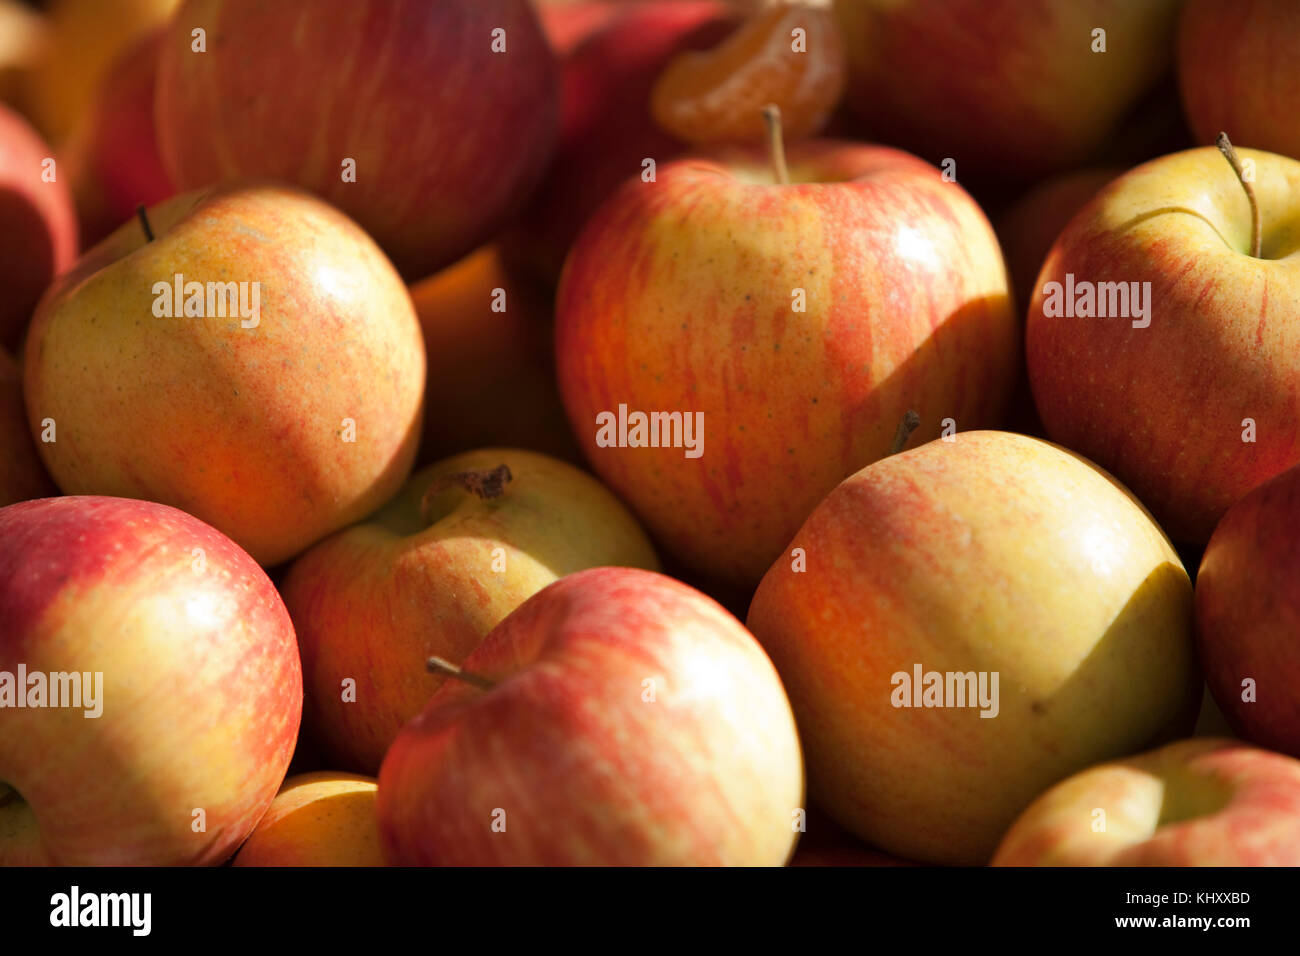 Full frame image of apples Stock Photo